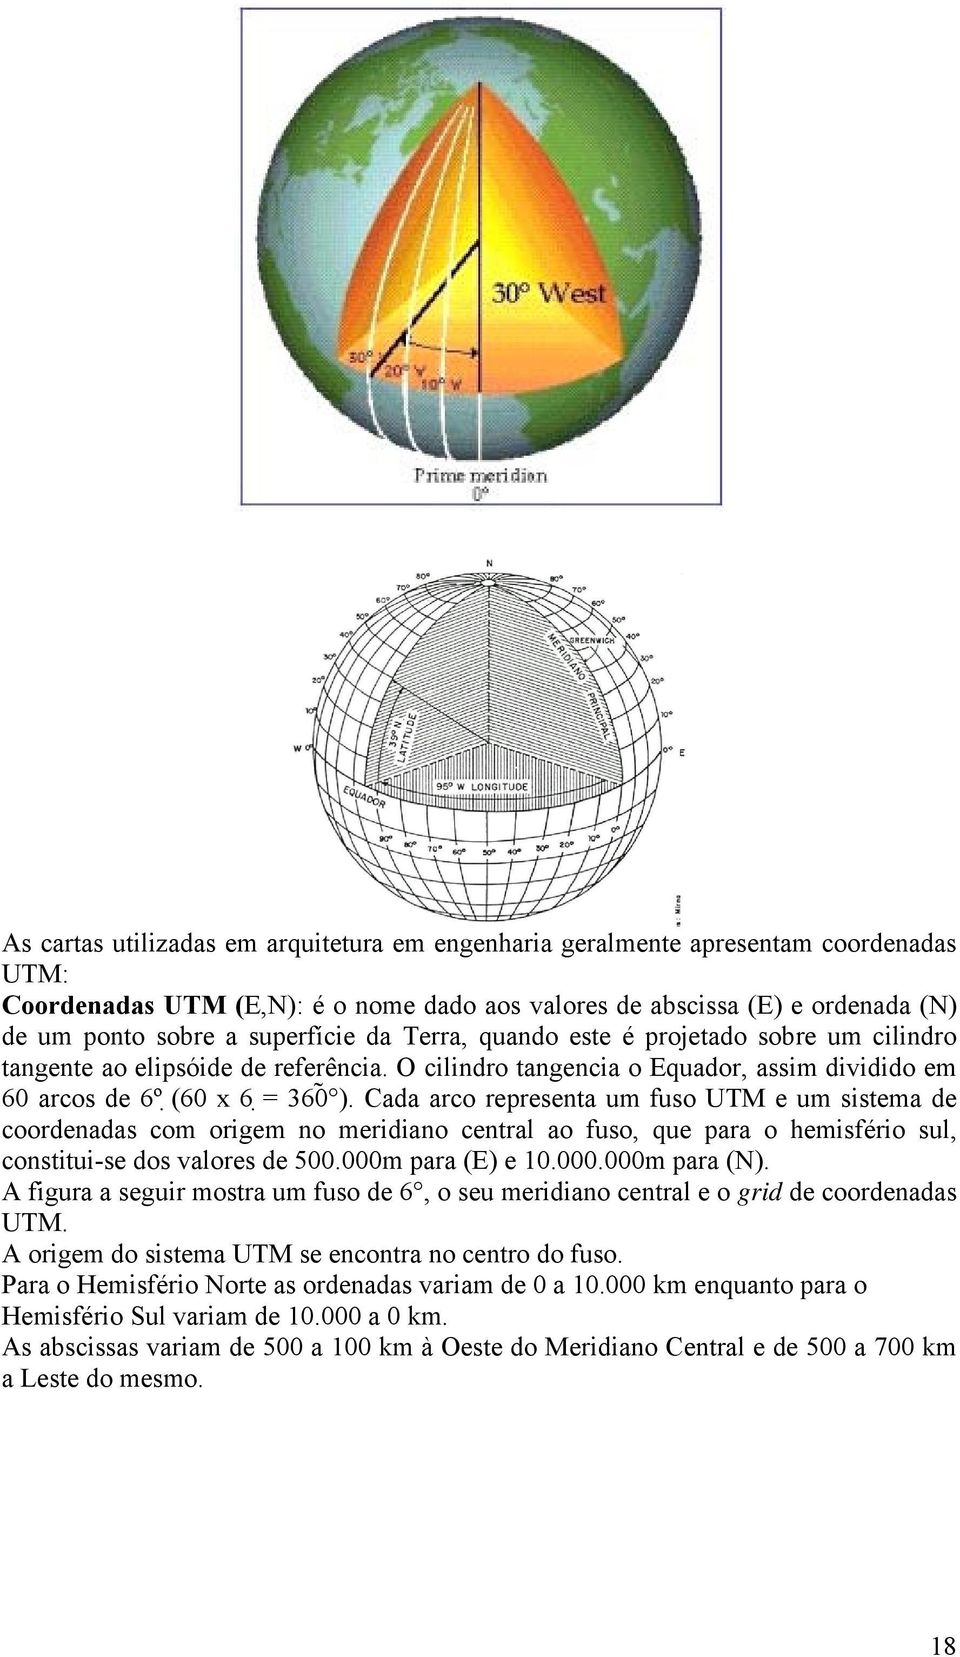 Cada arco representa um fuso UTM e um sistema de coordenadas com origem no meridiano central ao fuso, que para o hemisfério sul, constitui-se dos valores de 500.000m para (E) e 10.000.000m para (N).